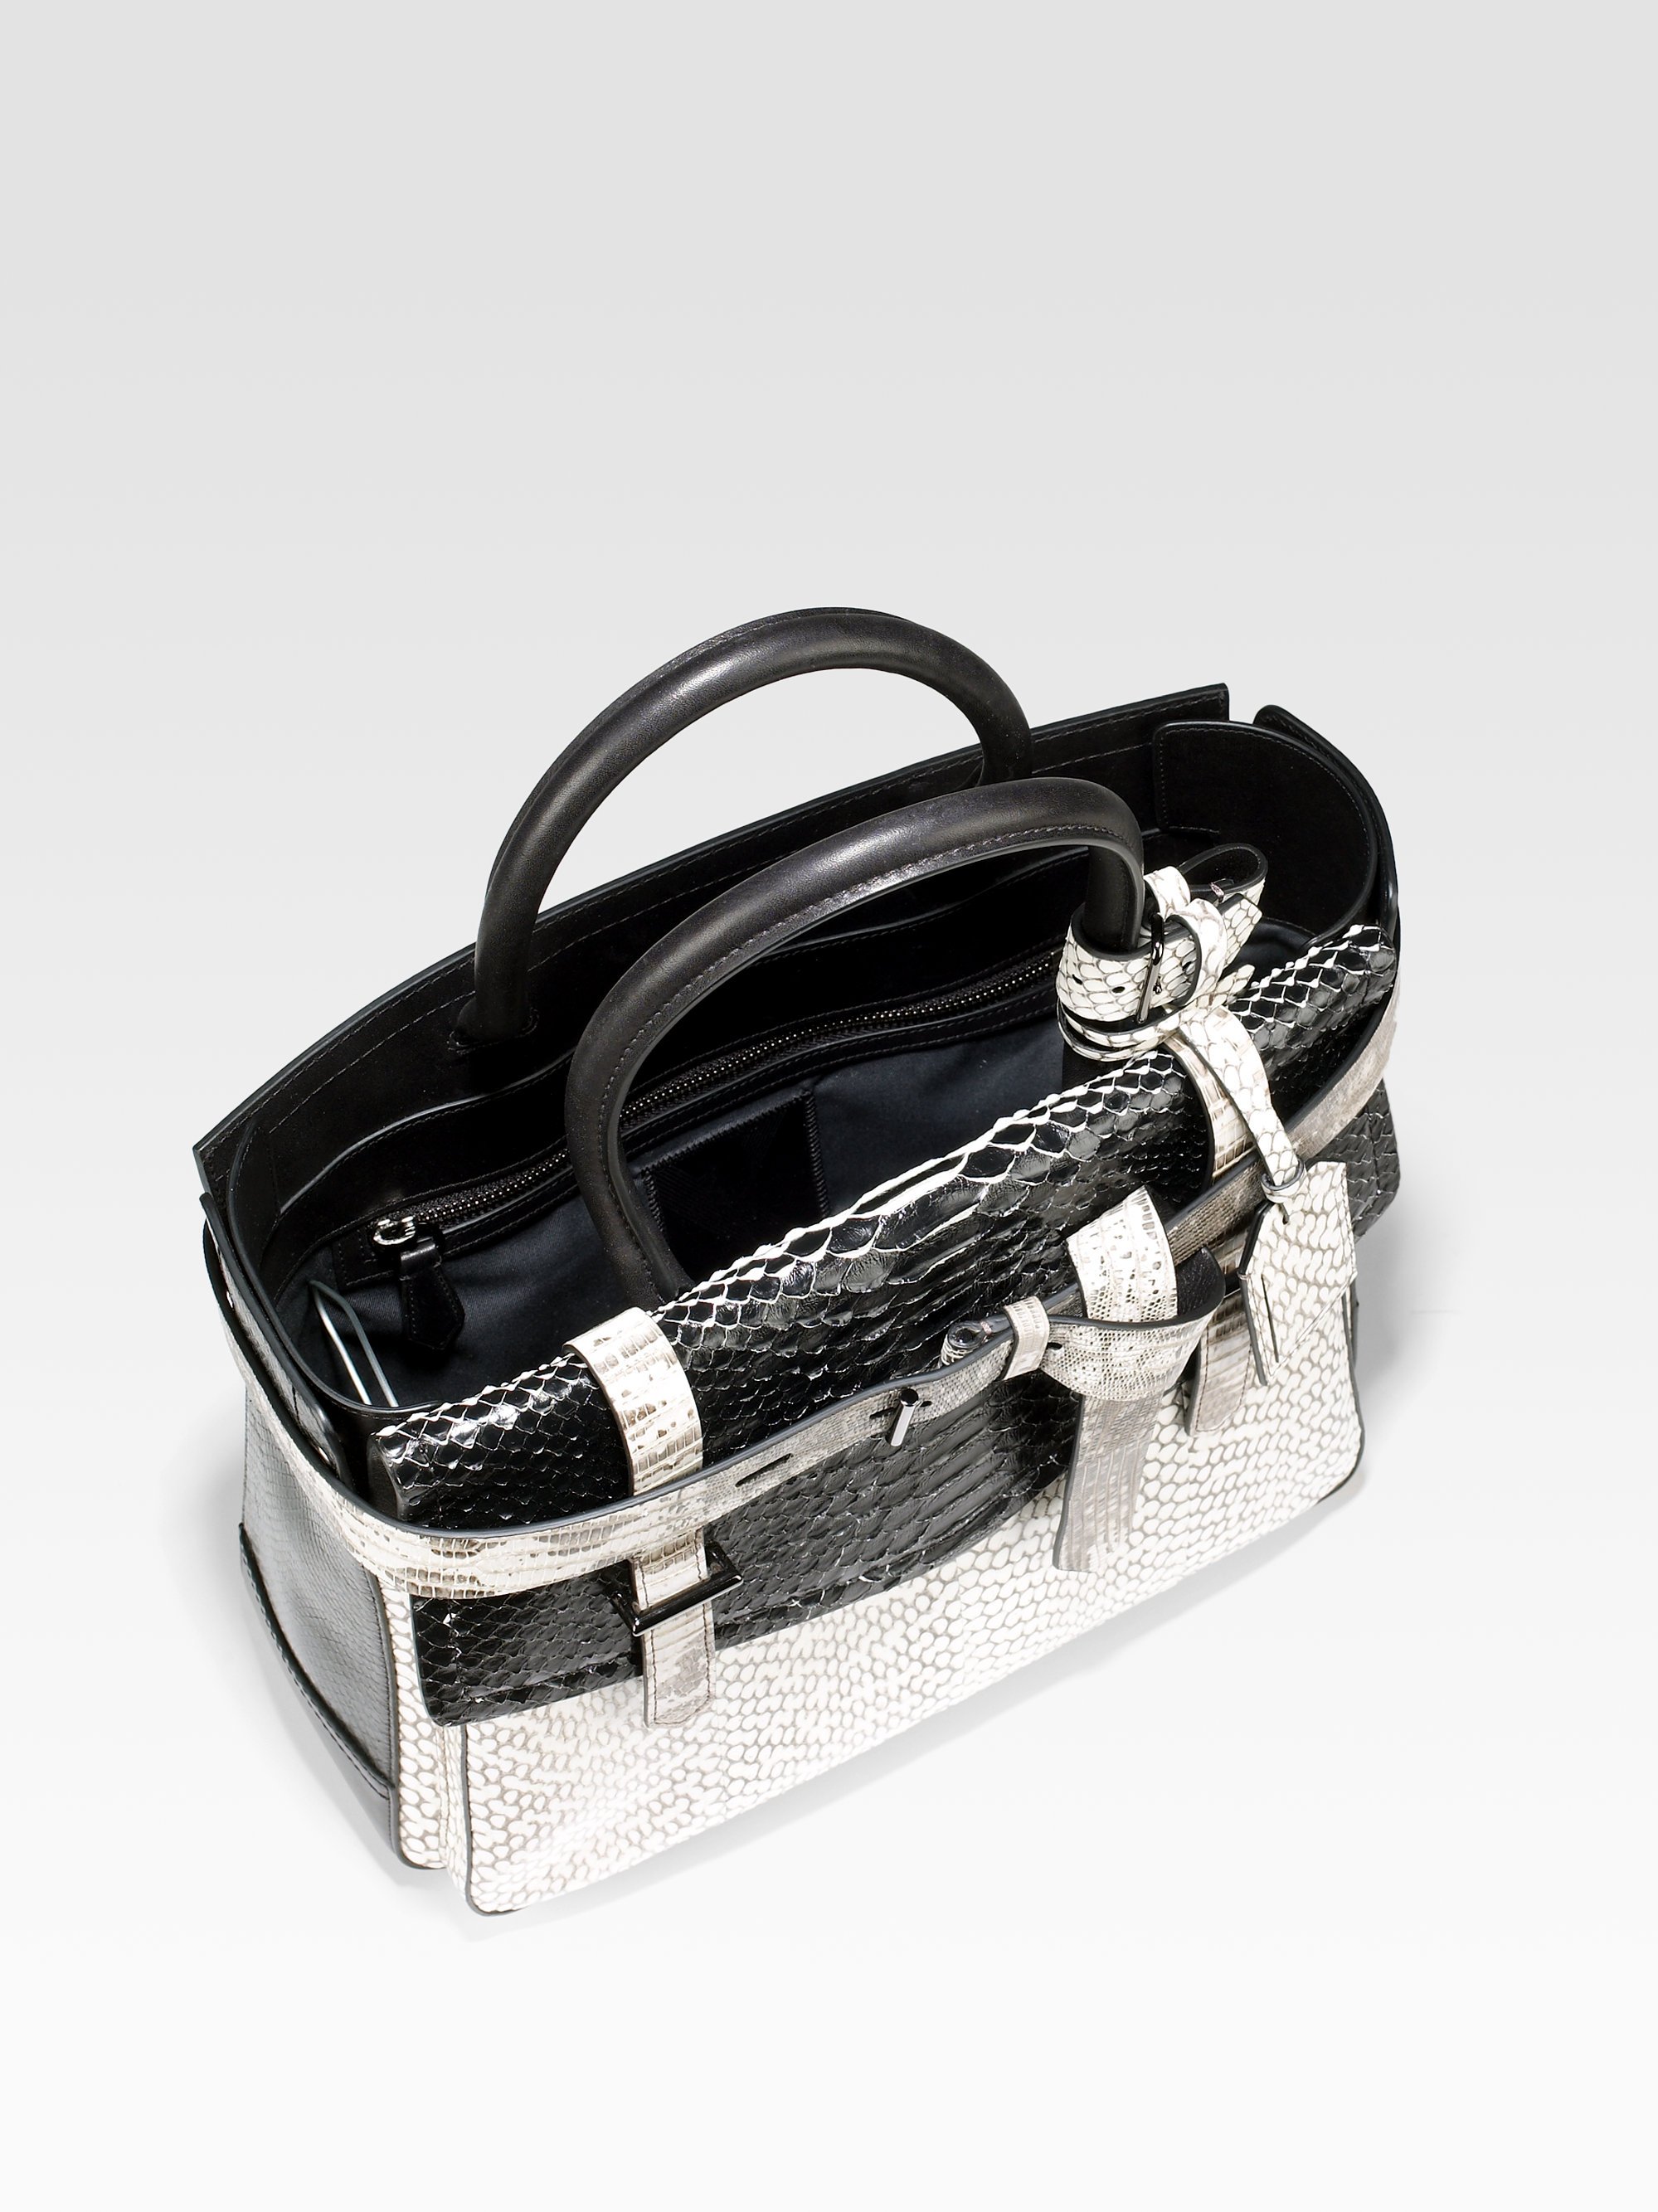 Reed krakoff Python Boxer Bag in White (black-white) | Lyst